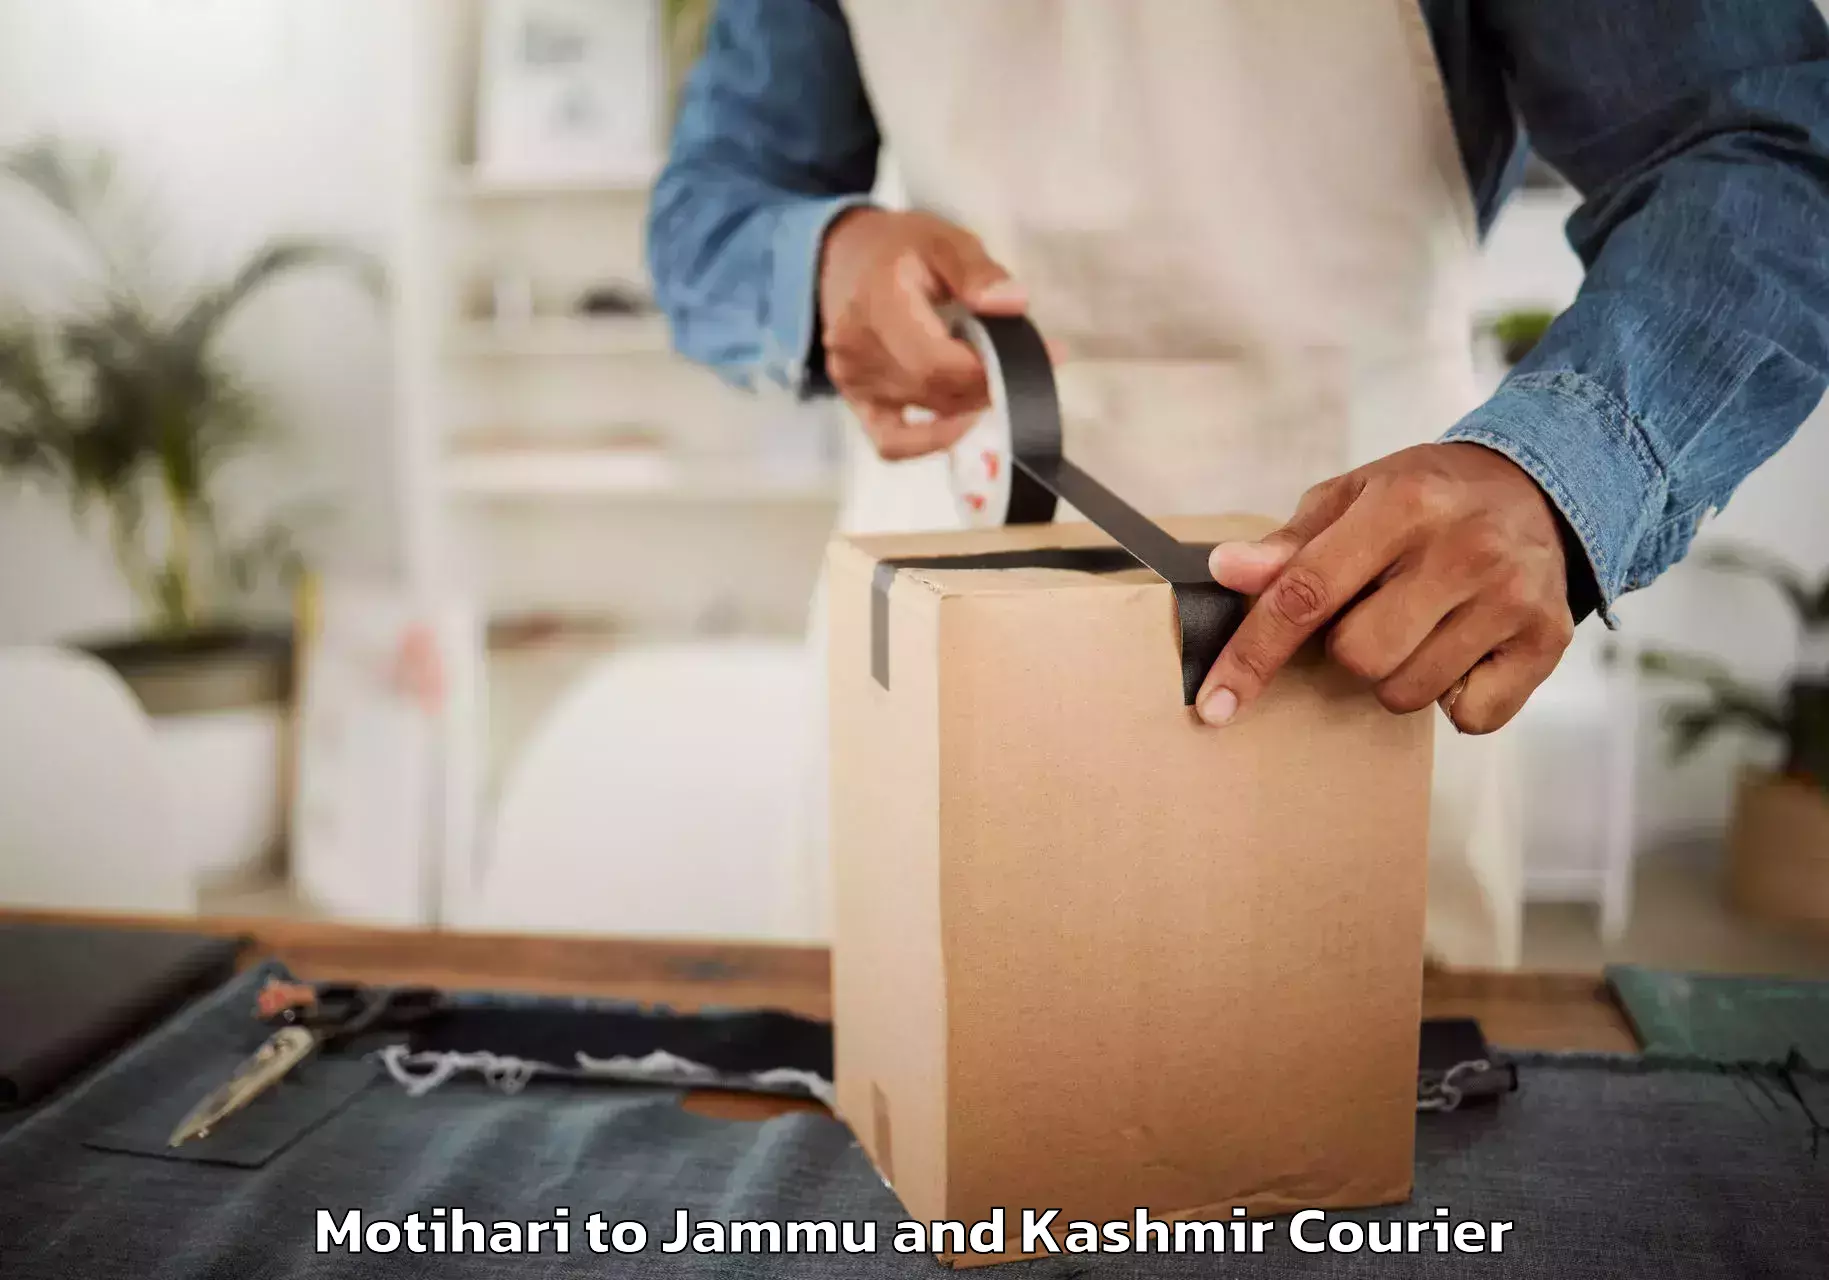 Furniture moving experts Motihari to Jammu and Kashmir